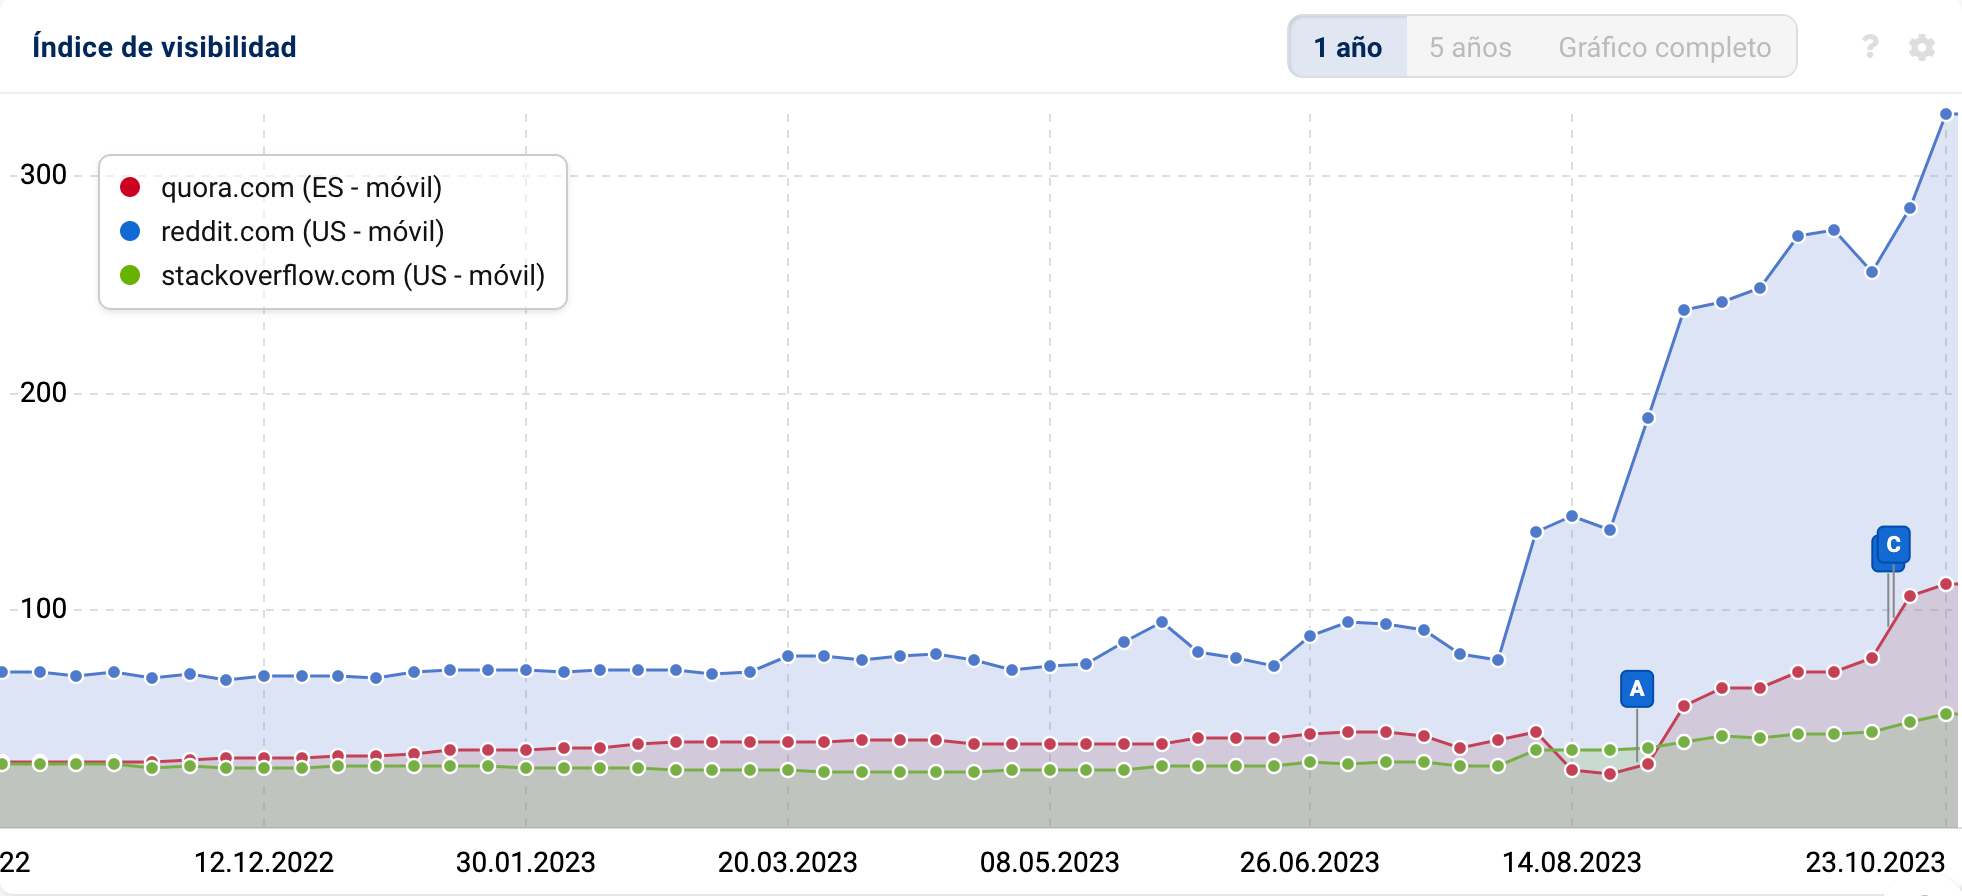 Gráfico con la evolución del Índice de Visibilidad de los dominios: "quora.com", "reddit.com" y "stackoverflow.com"